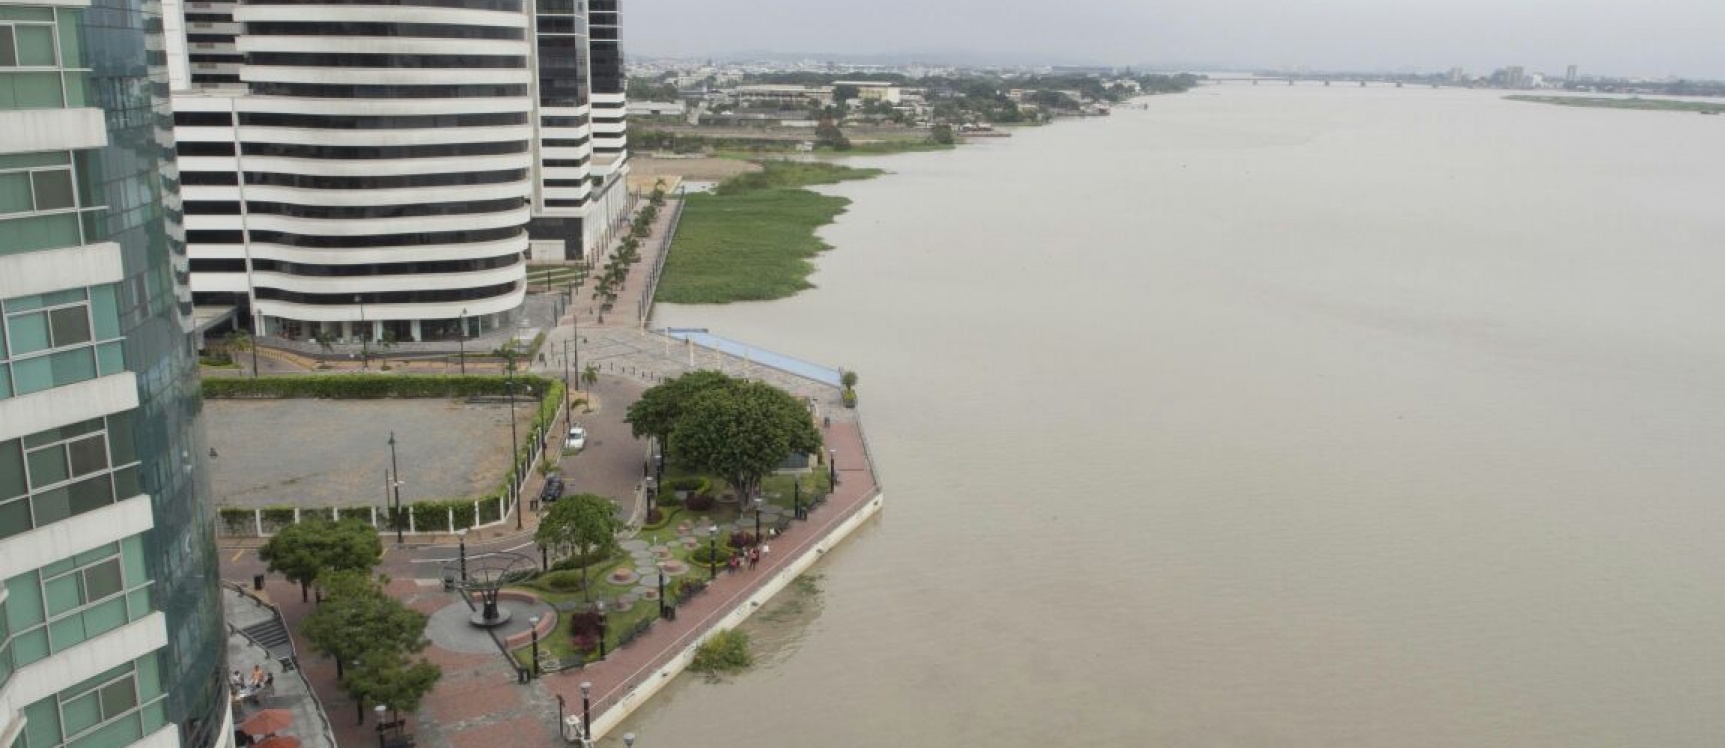 GeoBienes - Alquiler de suite en River Front - Ciudad del Río Guayaquil - Plusvalia Guayaquil Casas de venta y alquiler Inmobiliaria Ecuador